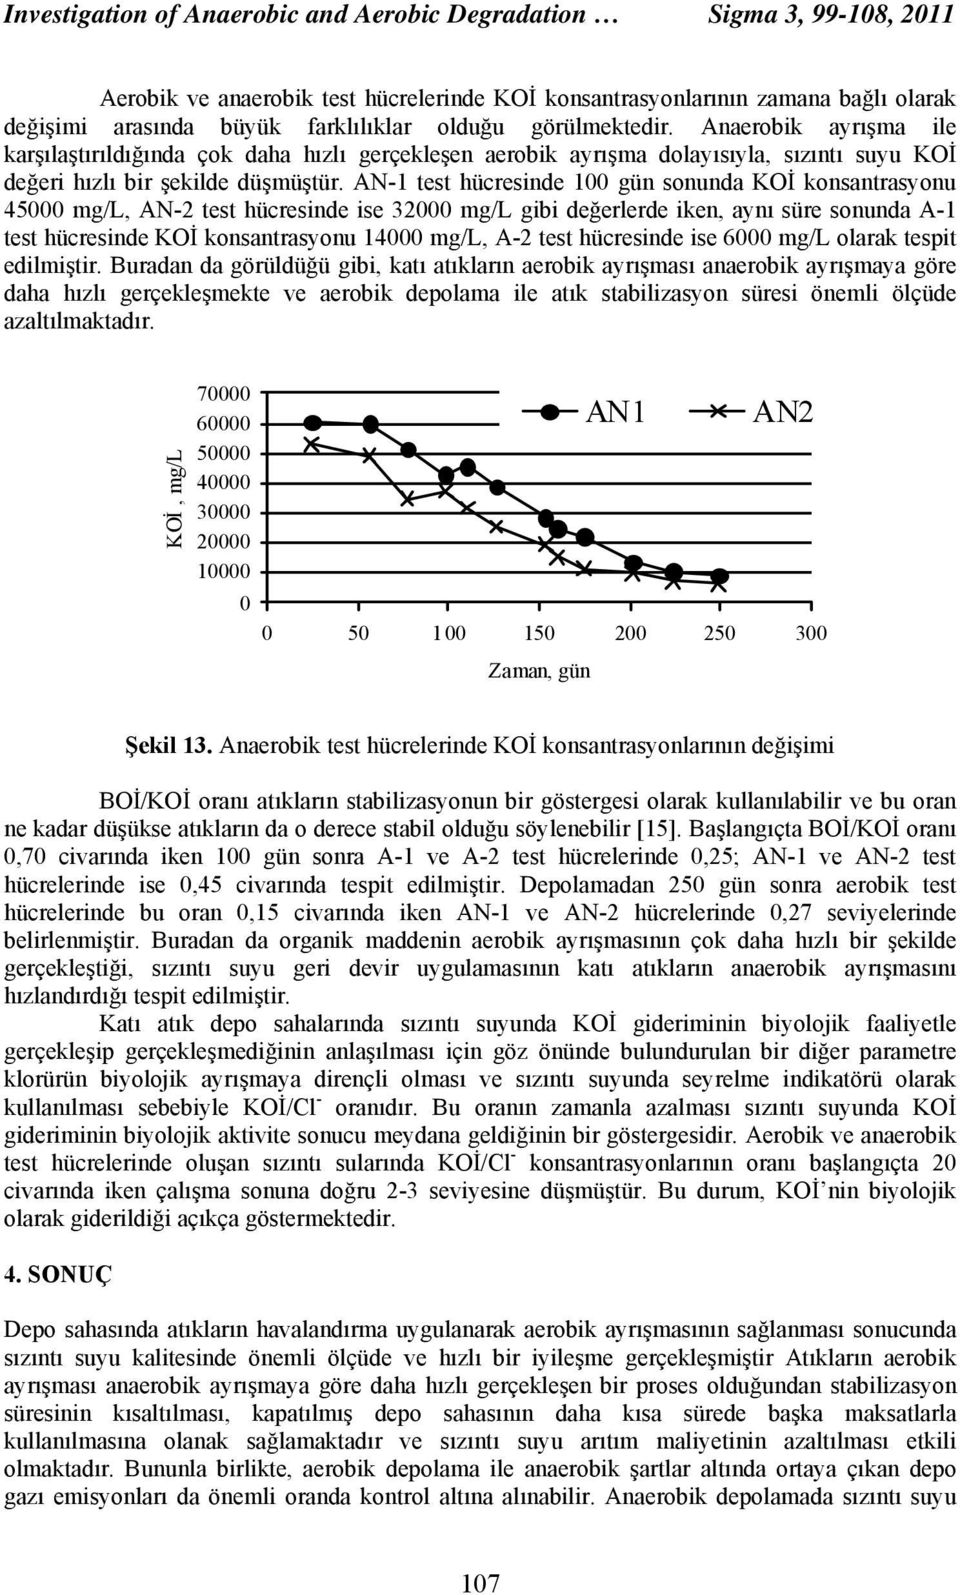 AN-1 test hücresinde 1 gün sonunda KOİ konsantrasyonu 45 mg/l, AN-2 test hücresinde ise 32 mg/l gibi değerlerde iken, aynı süre sonunda A-1 test hücresinde KOİ konsantrasyonu 14 mg/l, A-2 test